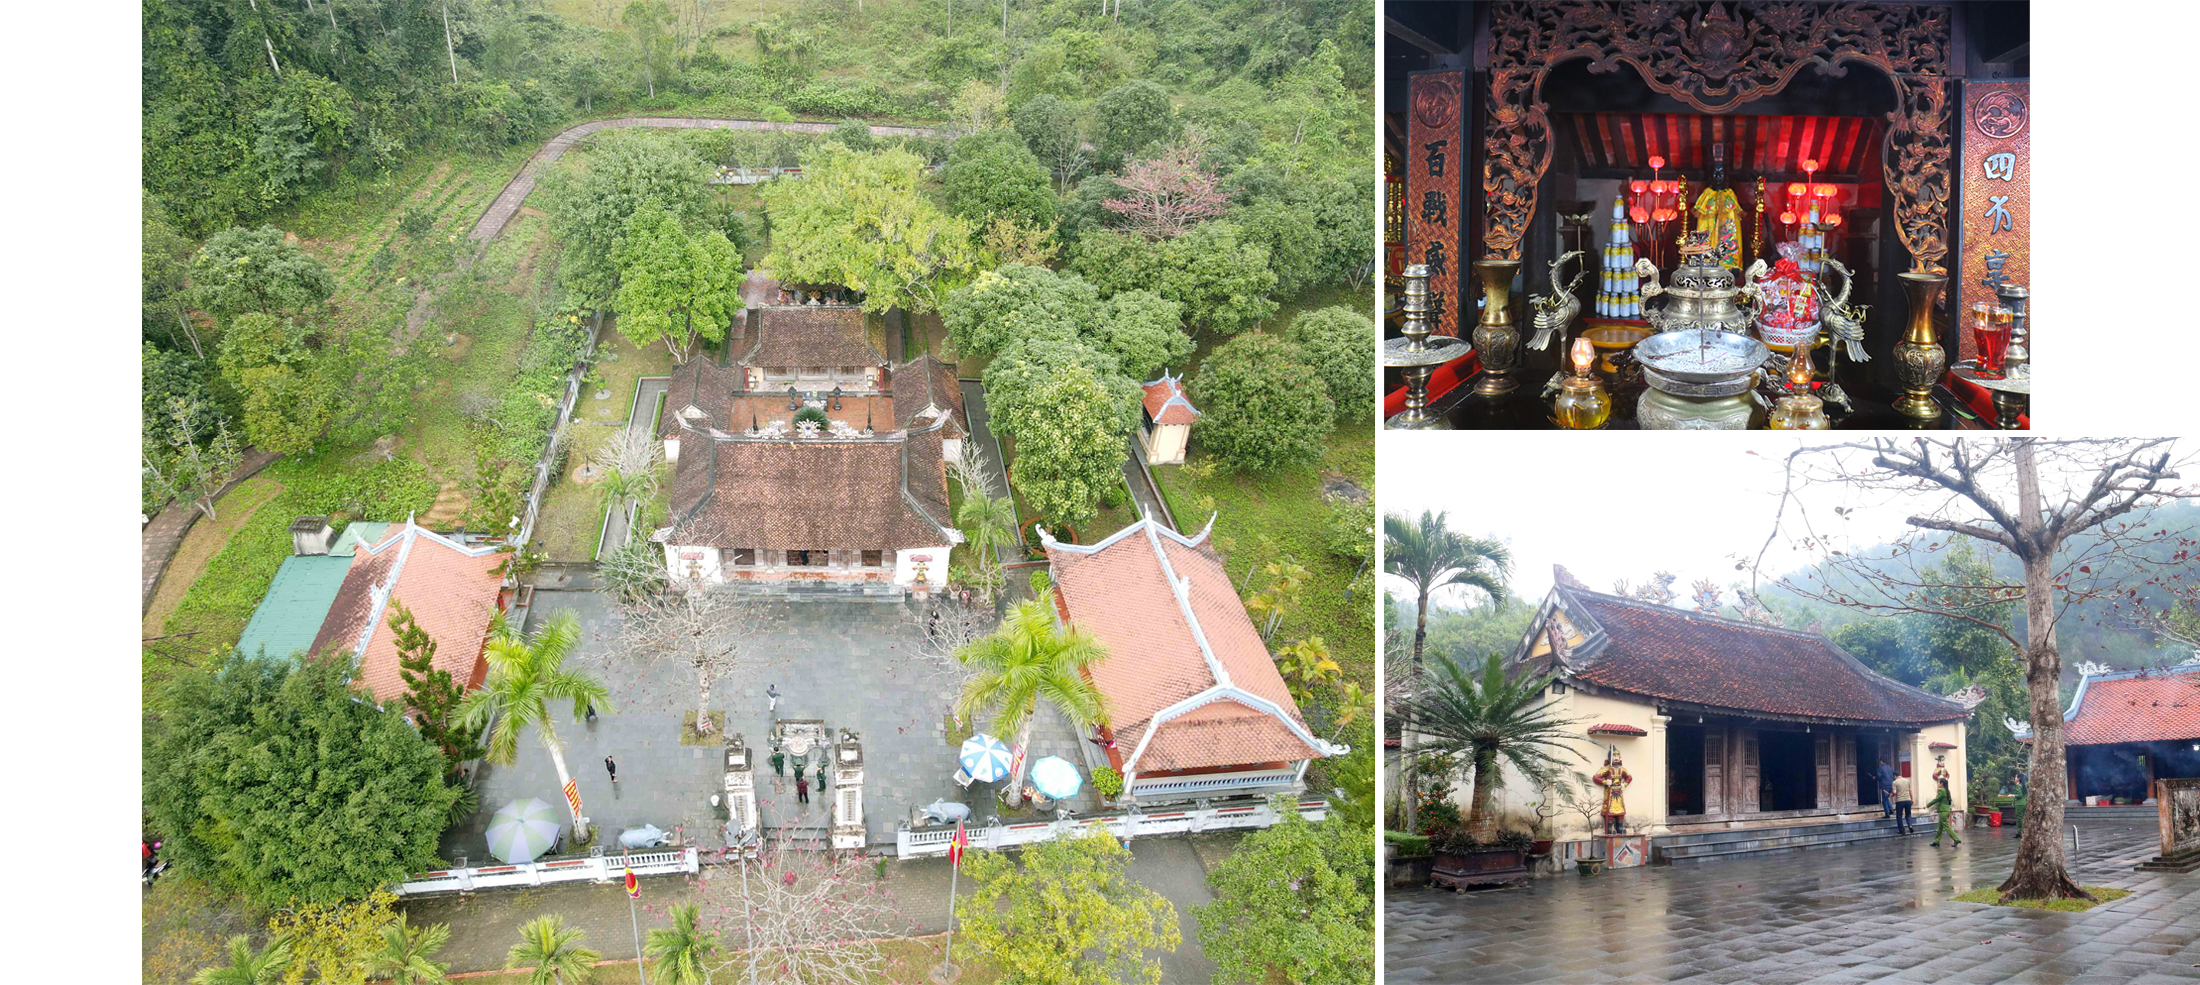 Đền thờ và khu miếu mộ Vua Mai ở khối Hùng Sơn, thị trấn Nam Đàn. Ảnh tư liệu: Huy Thư